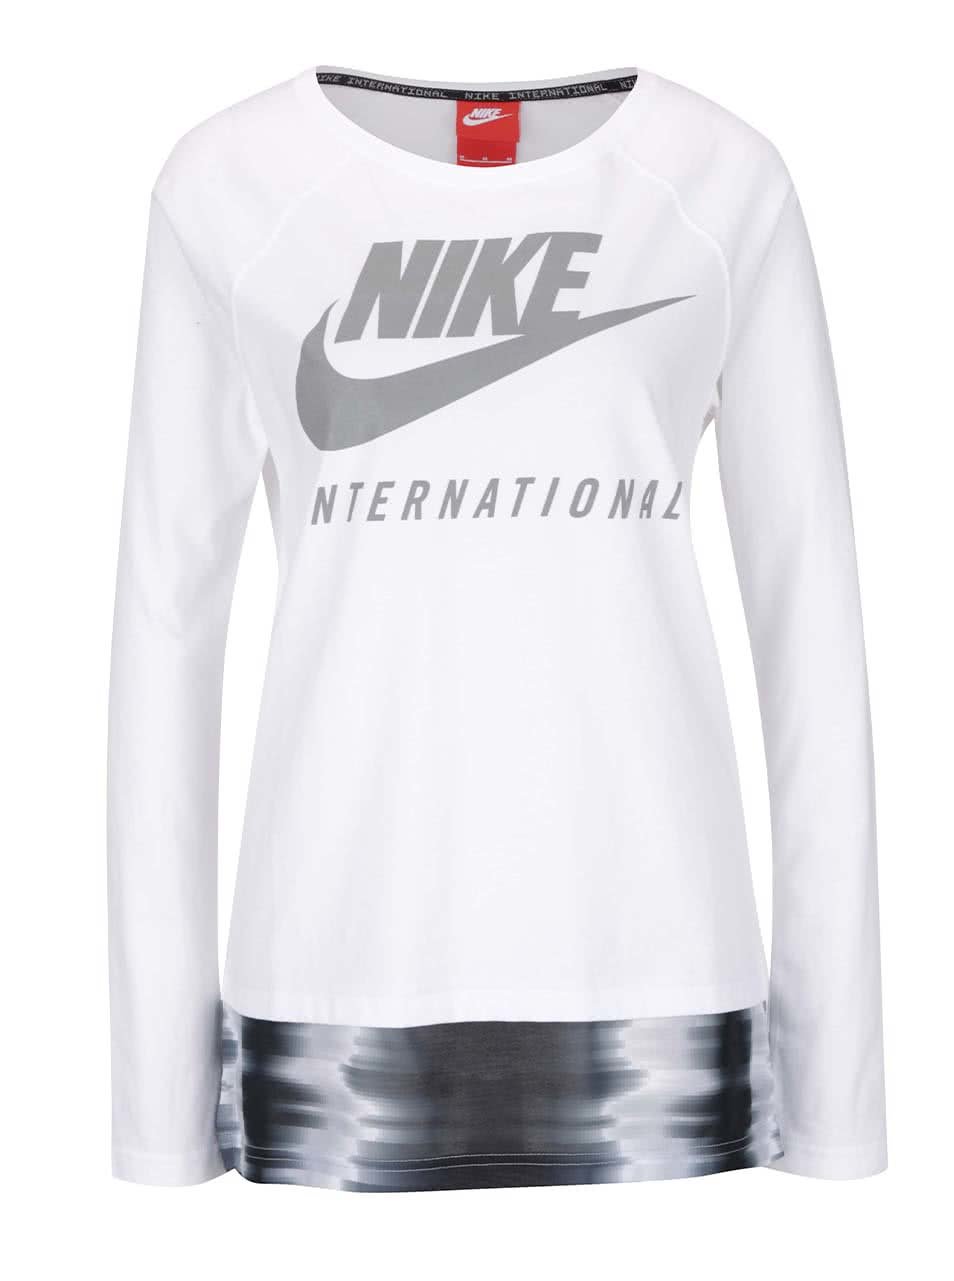 Bílé dámské tričko s dlouhým rukávem Nike International Top